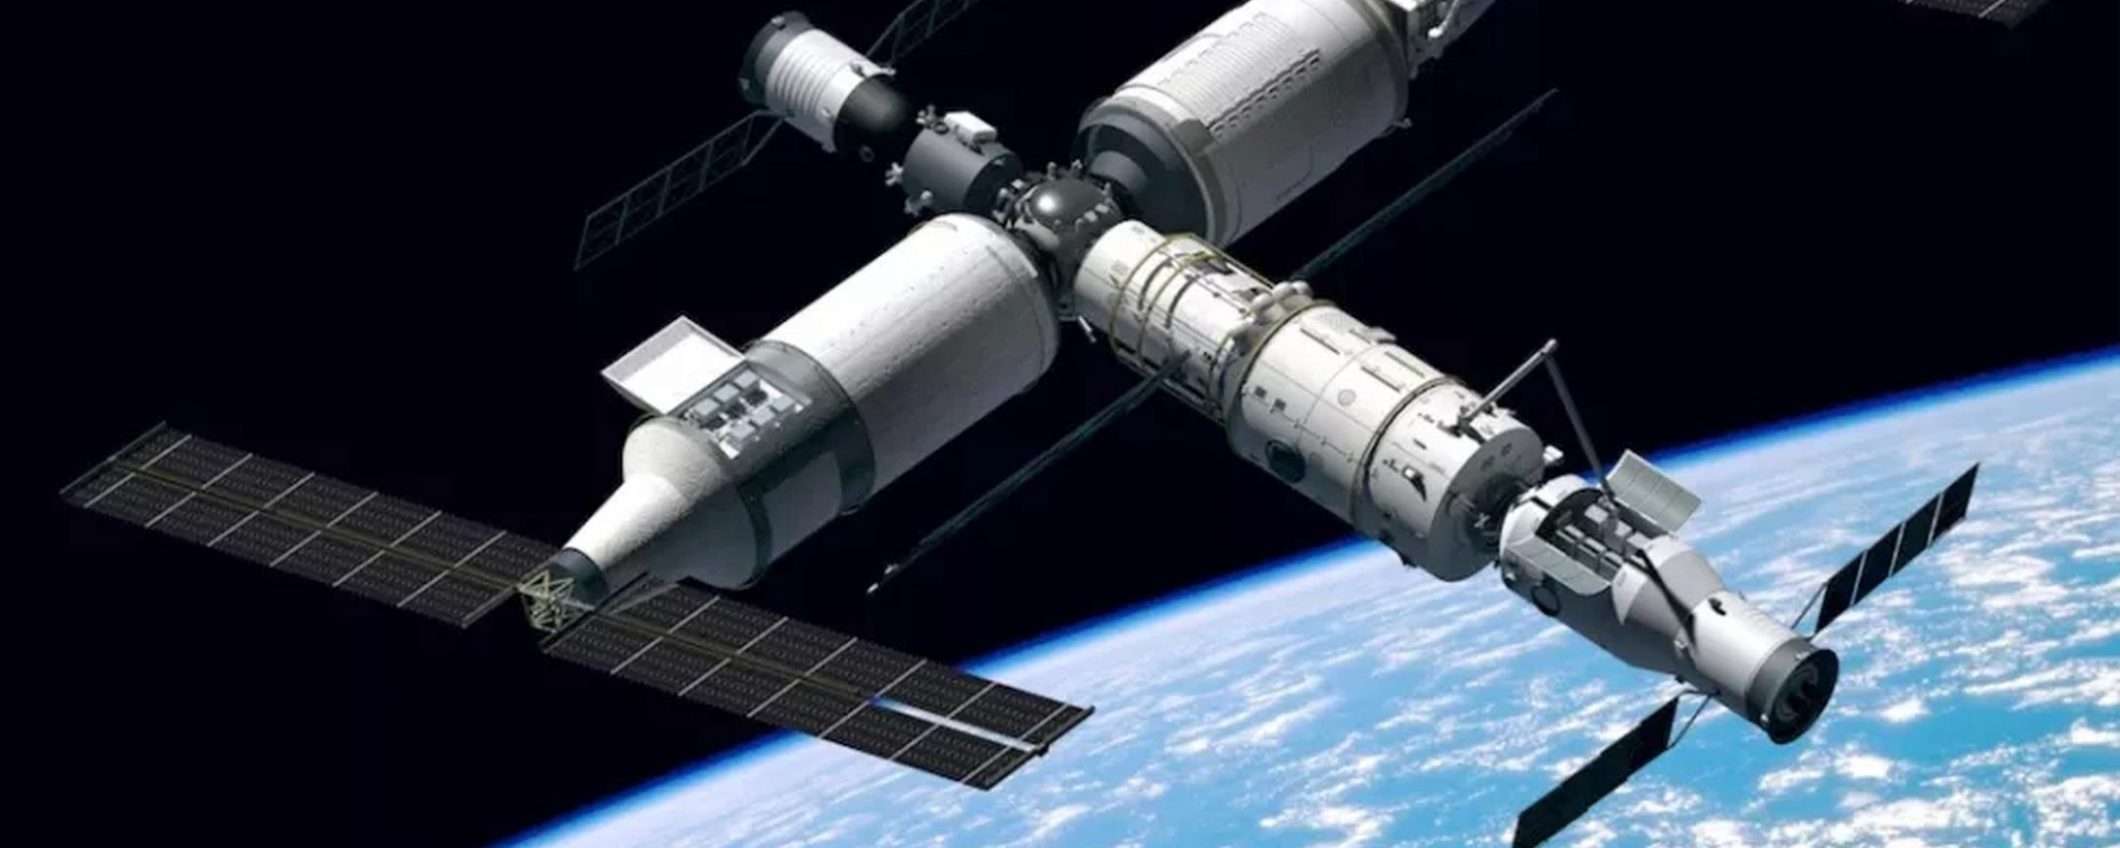 Stazione spaziale cinese: lanciato secondo modulo